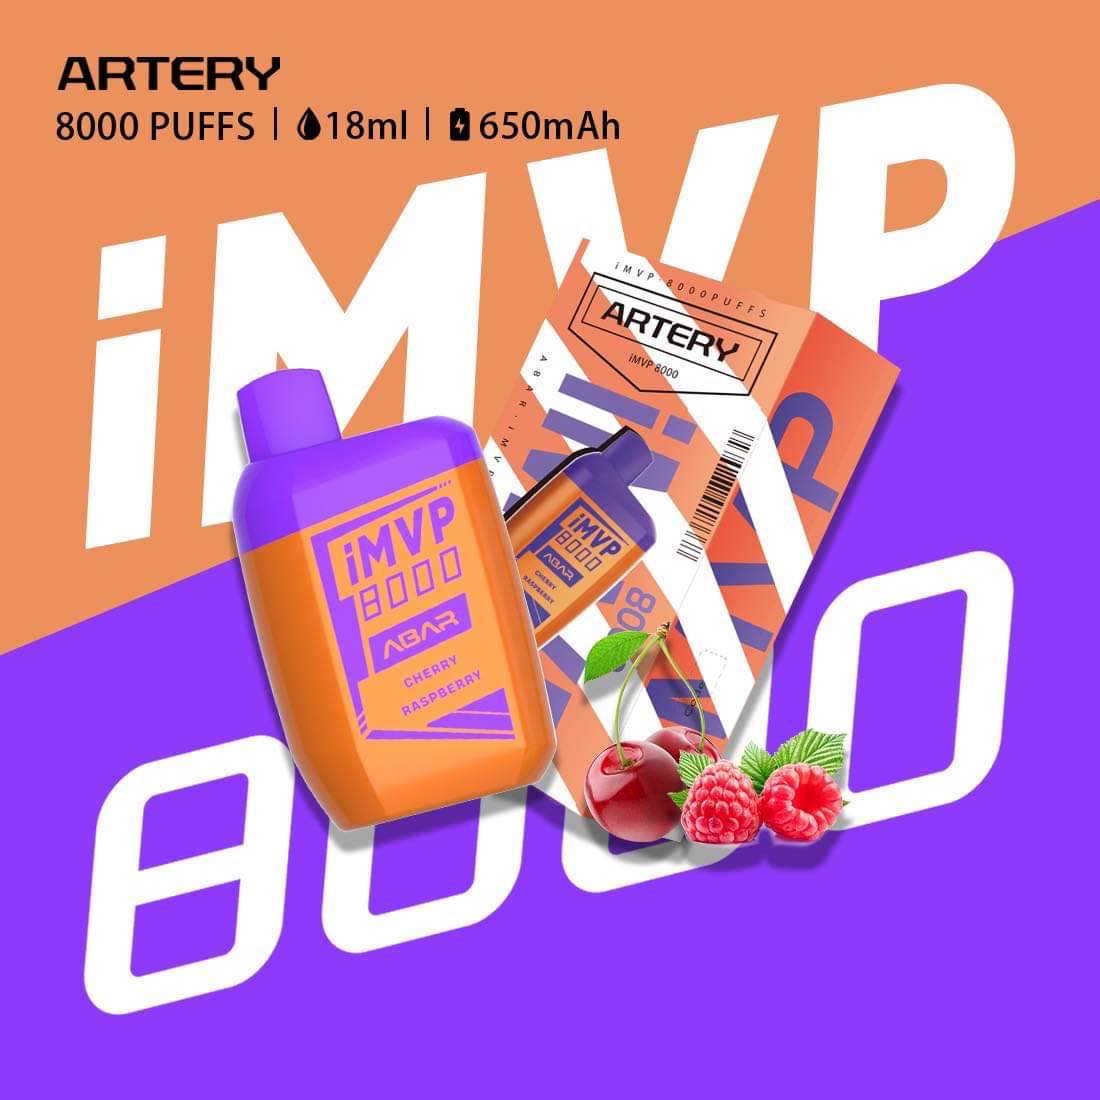 Artery iMVP 8000 Puffs - 9 